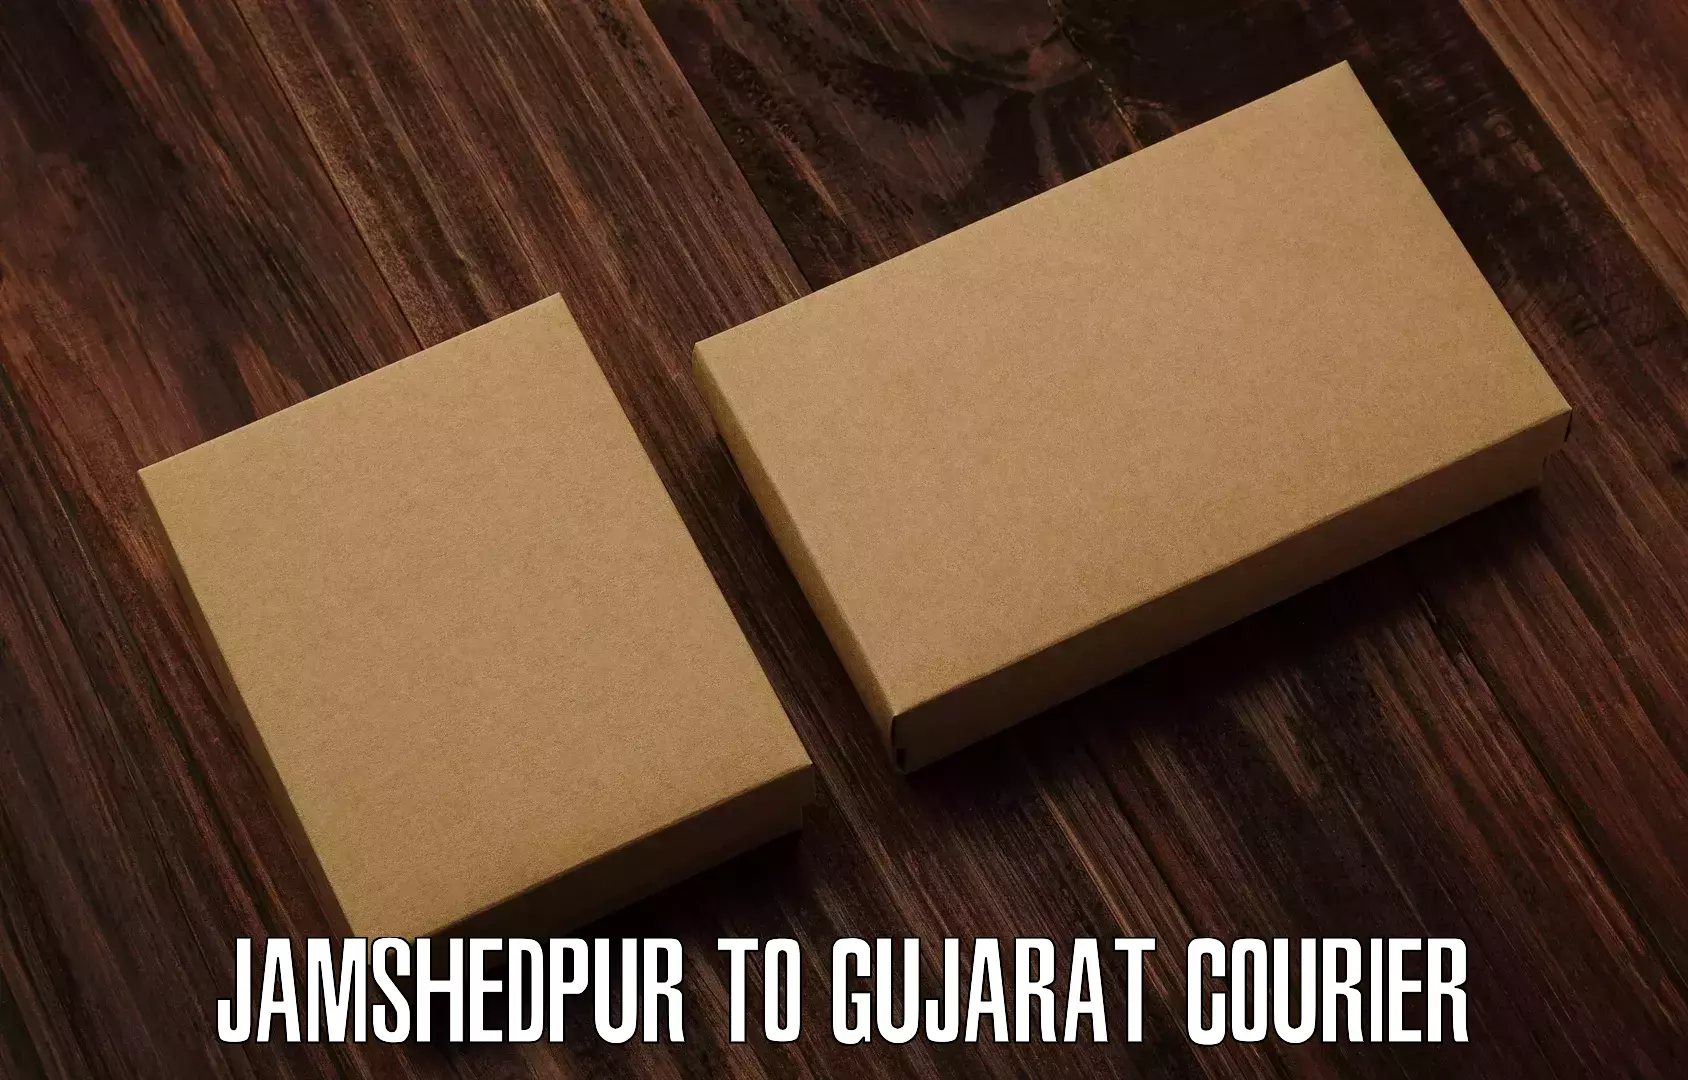 Global parcel delivery Jamshedpur to Bhuj